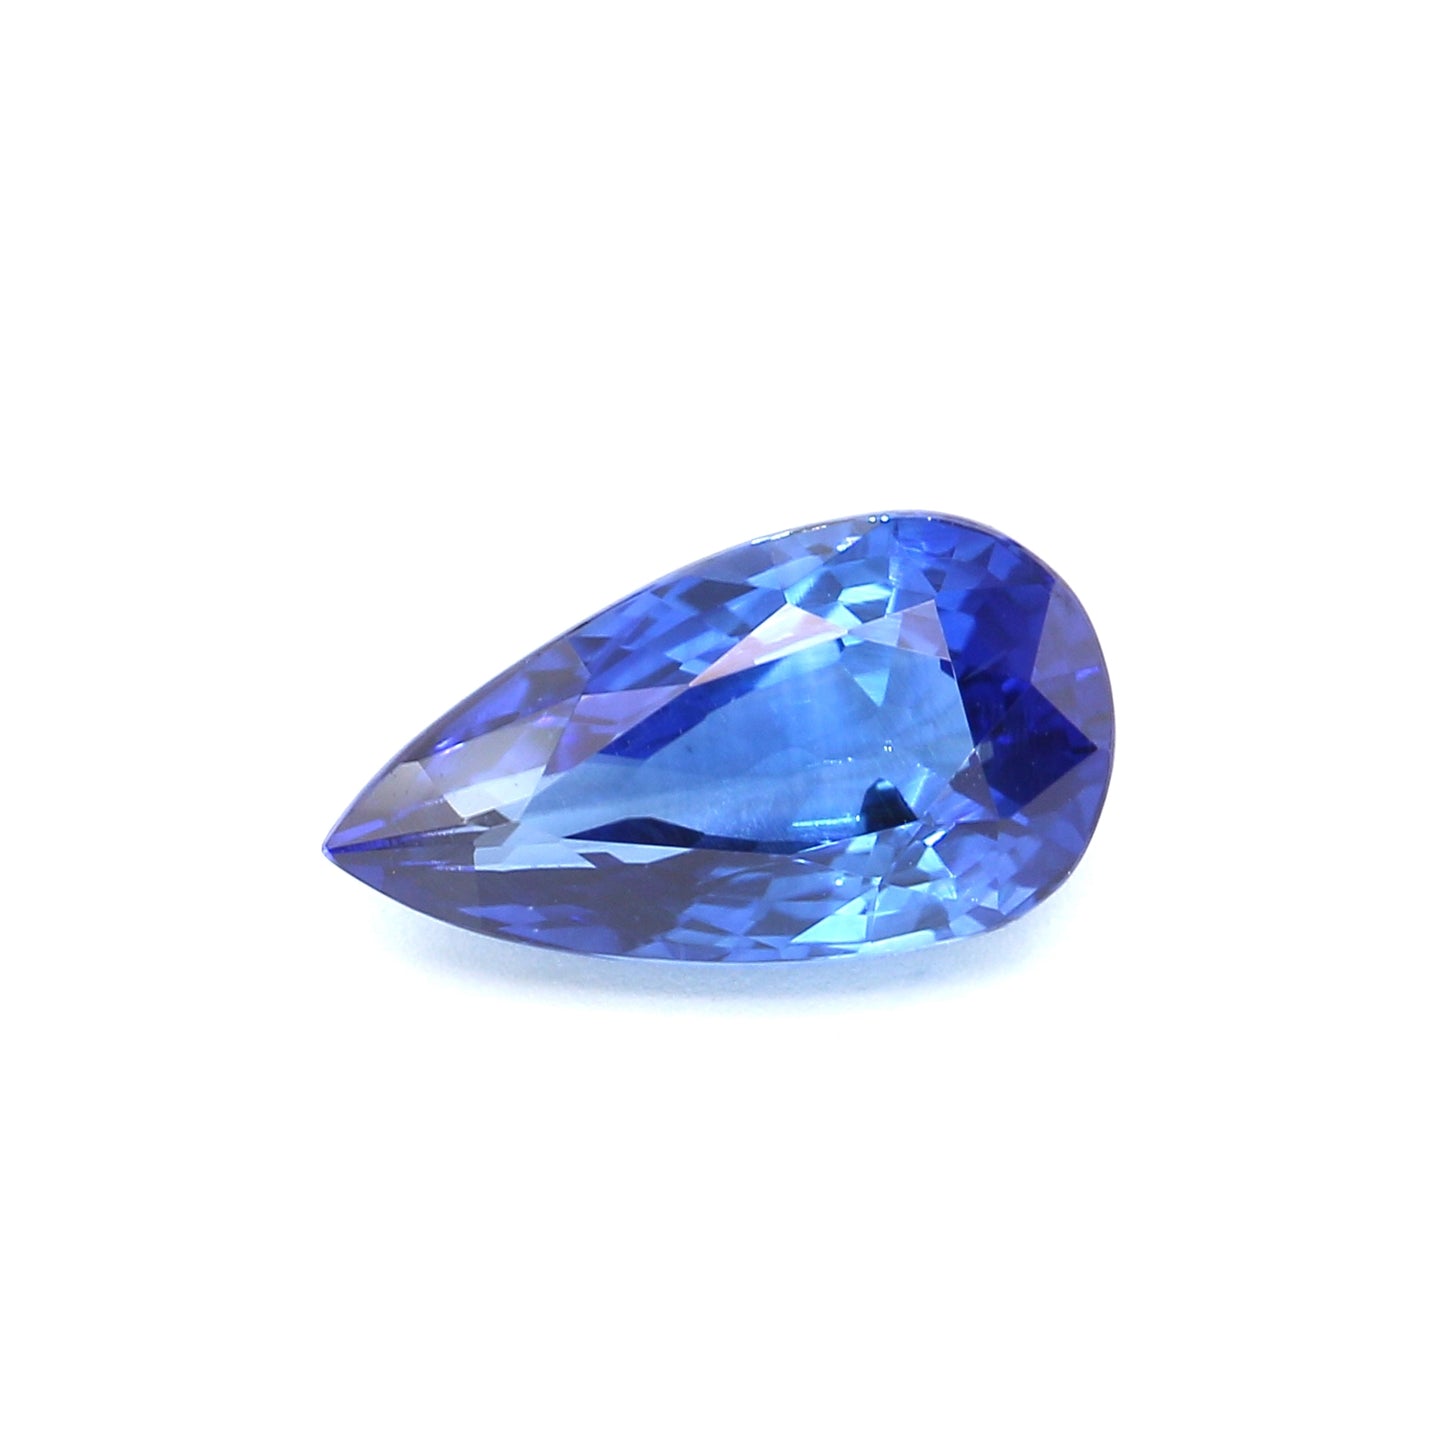 1.77ct Pear Shape Sapphire, Heated, Sri Lanka - 9.73 x 5.29 x 4.03mm